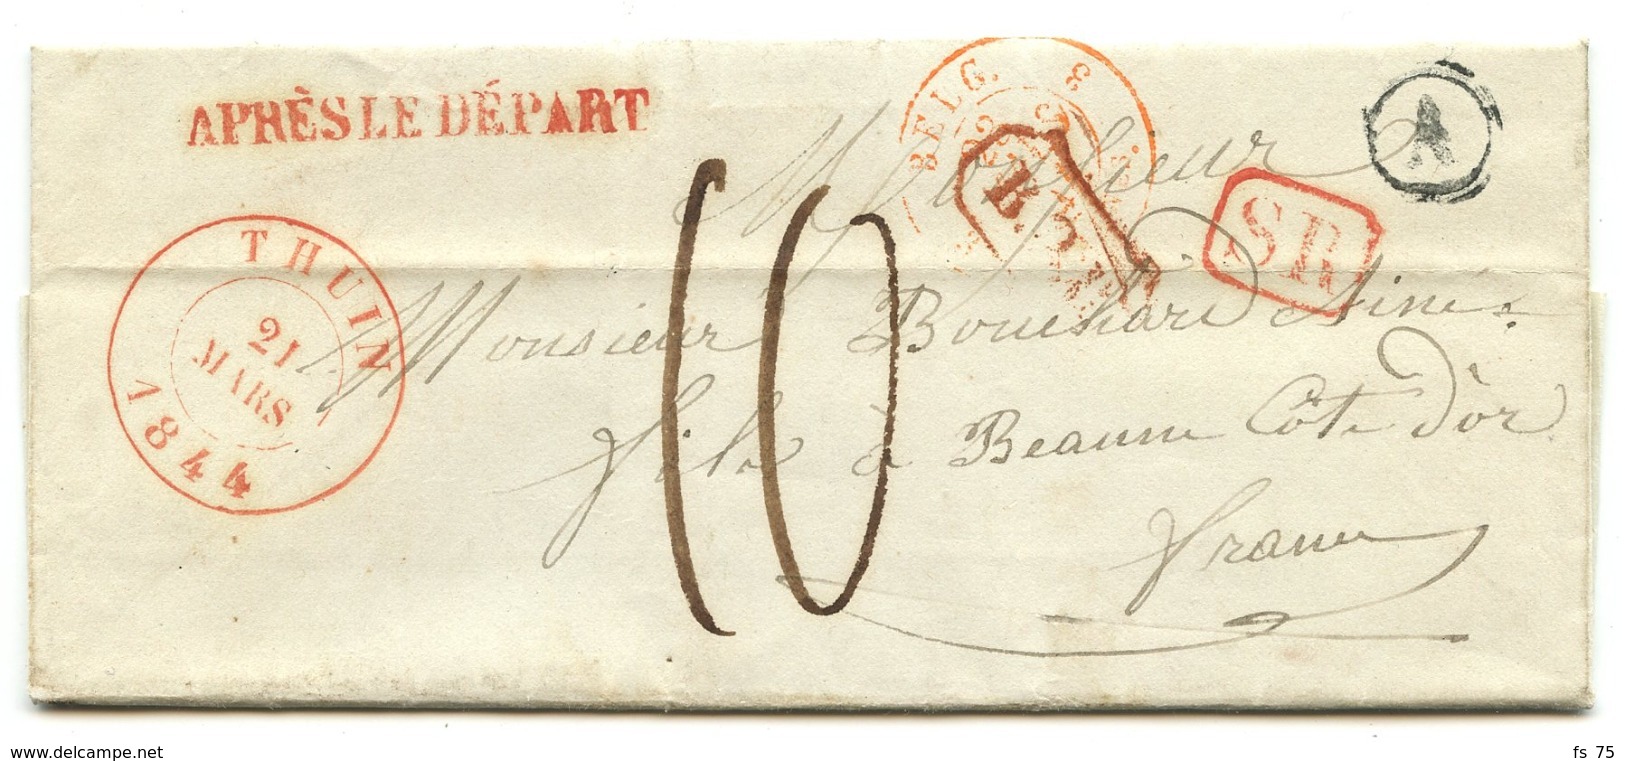 BELGIQUE - CAD THUIN + SR + BOITE A SUR LETTRE AVEC TEXTE DE GOZE POUR LA FRANCE, 1844 - 1830-1849 (Onafhankelijk België)